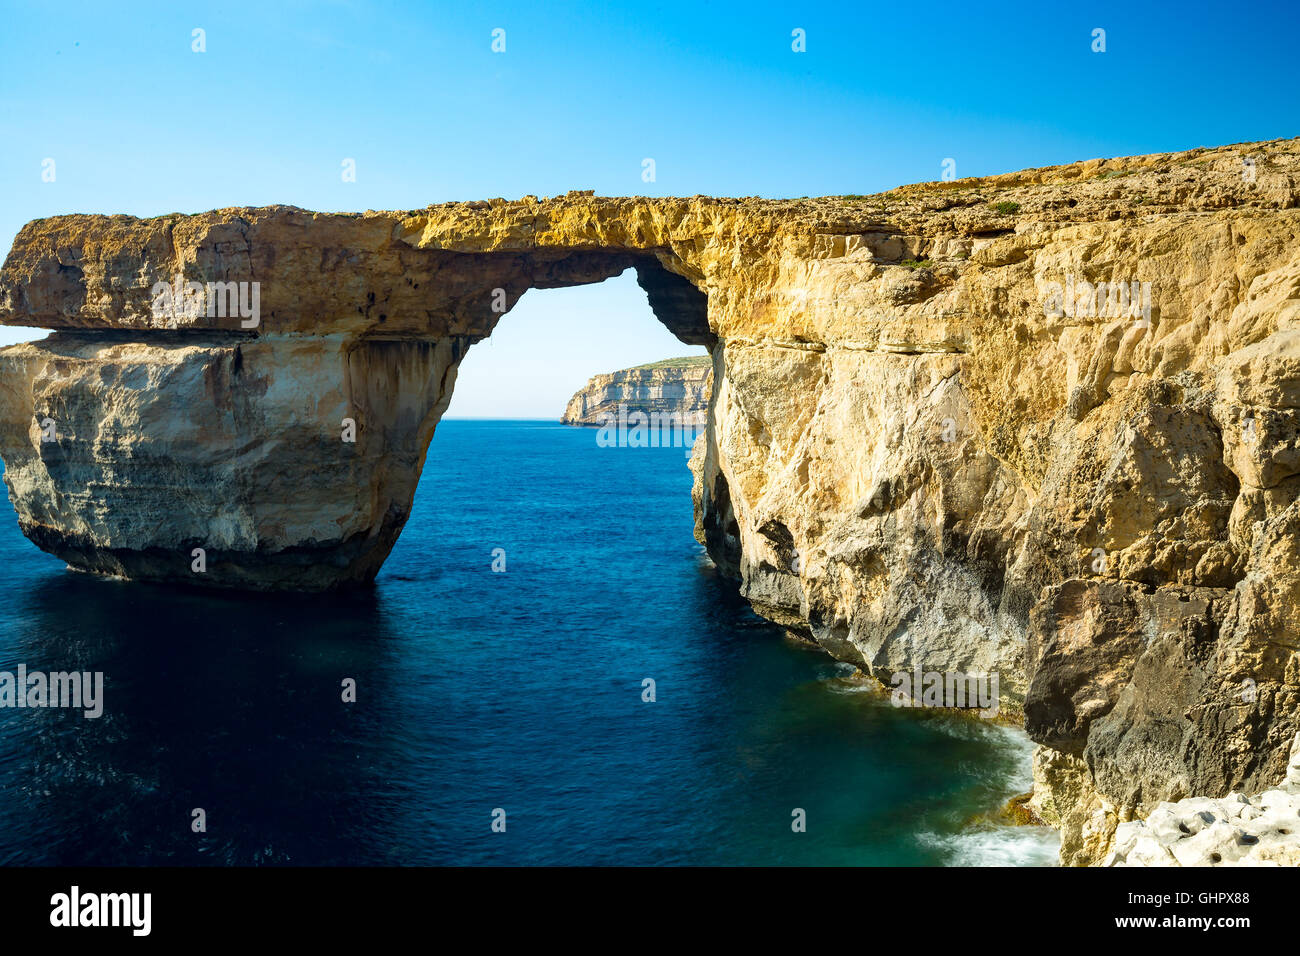 Azure Window, Naturale, Wahrzeichen und beliebten touristischen Ort auf der Insel Gozo, Malta Stockfoto